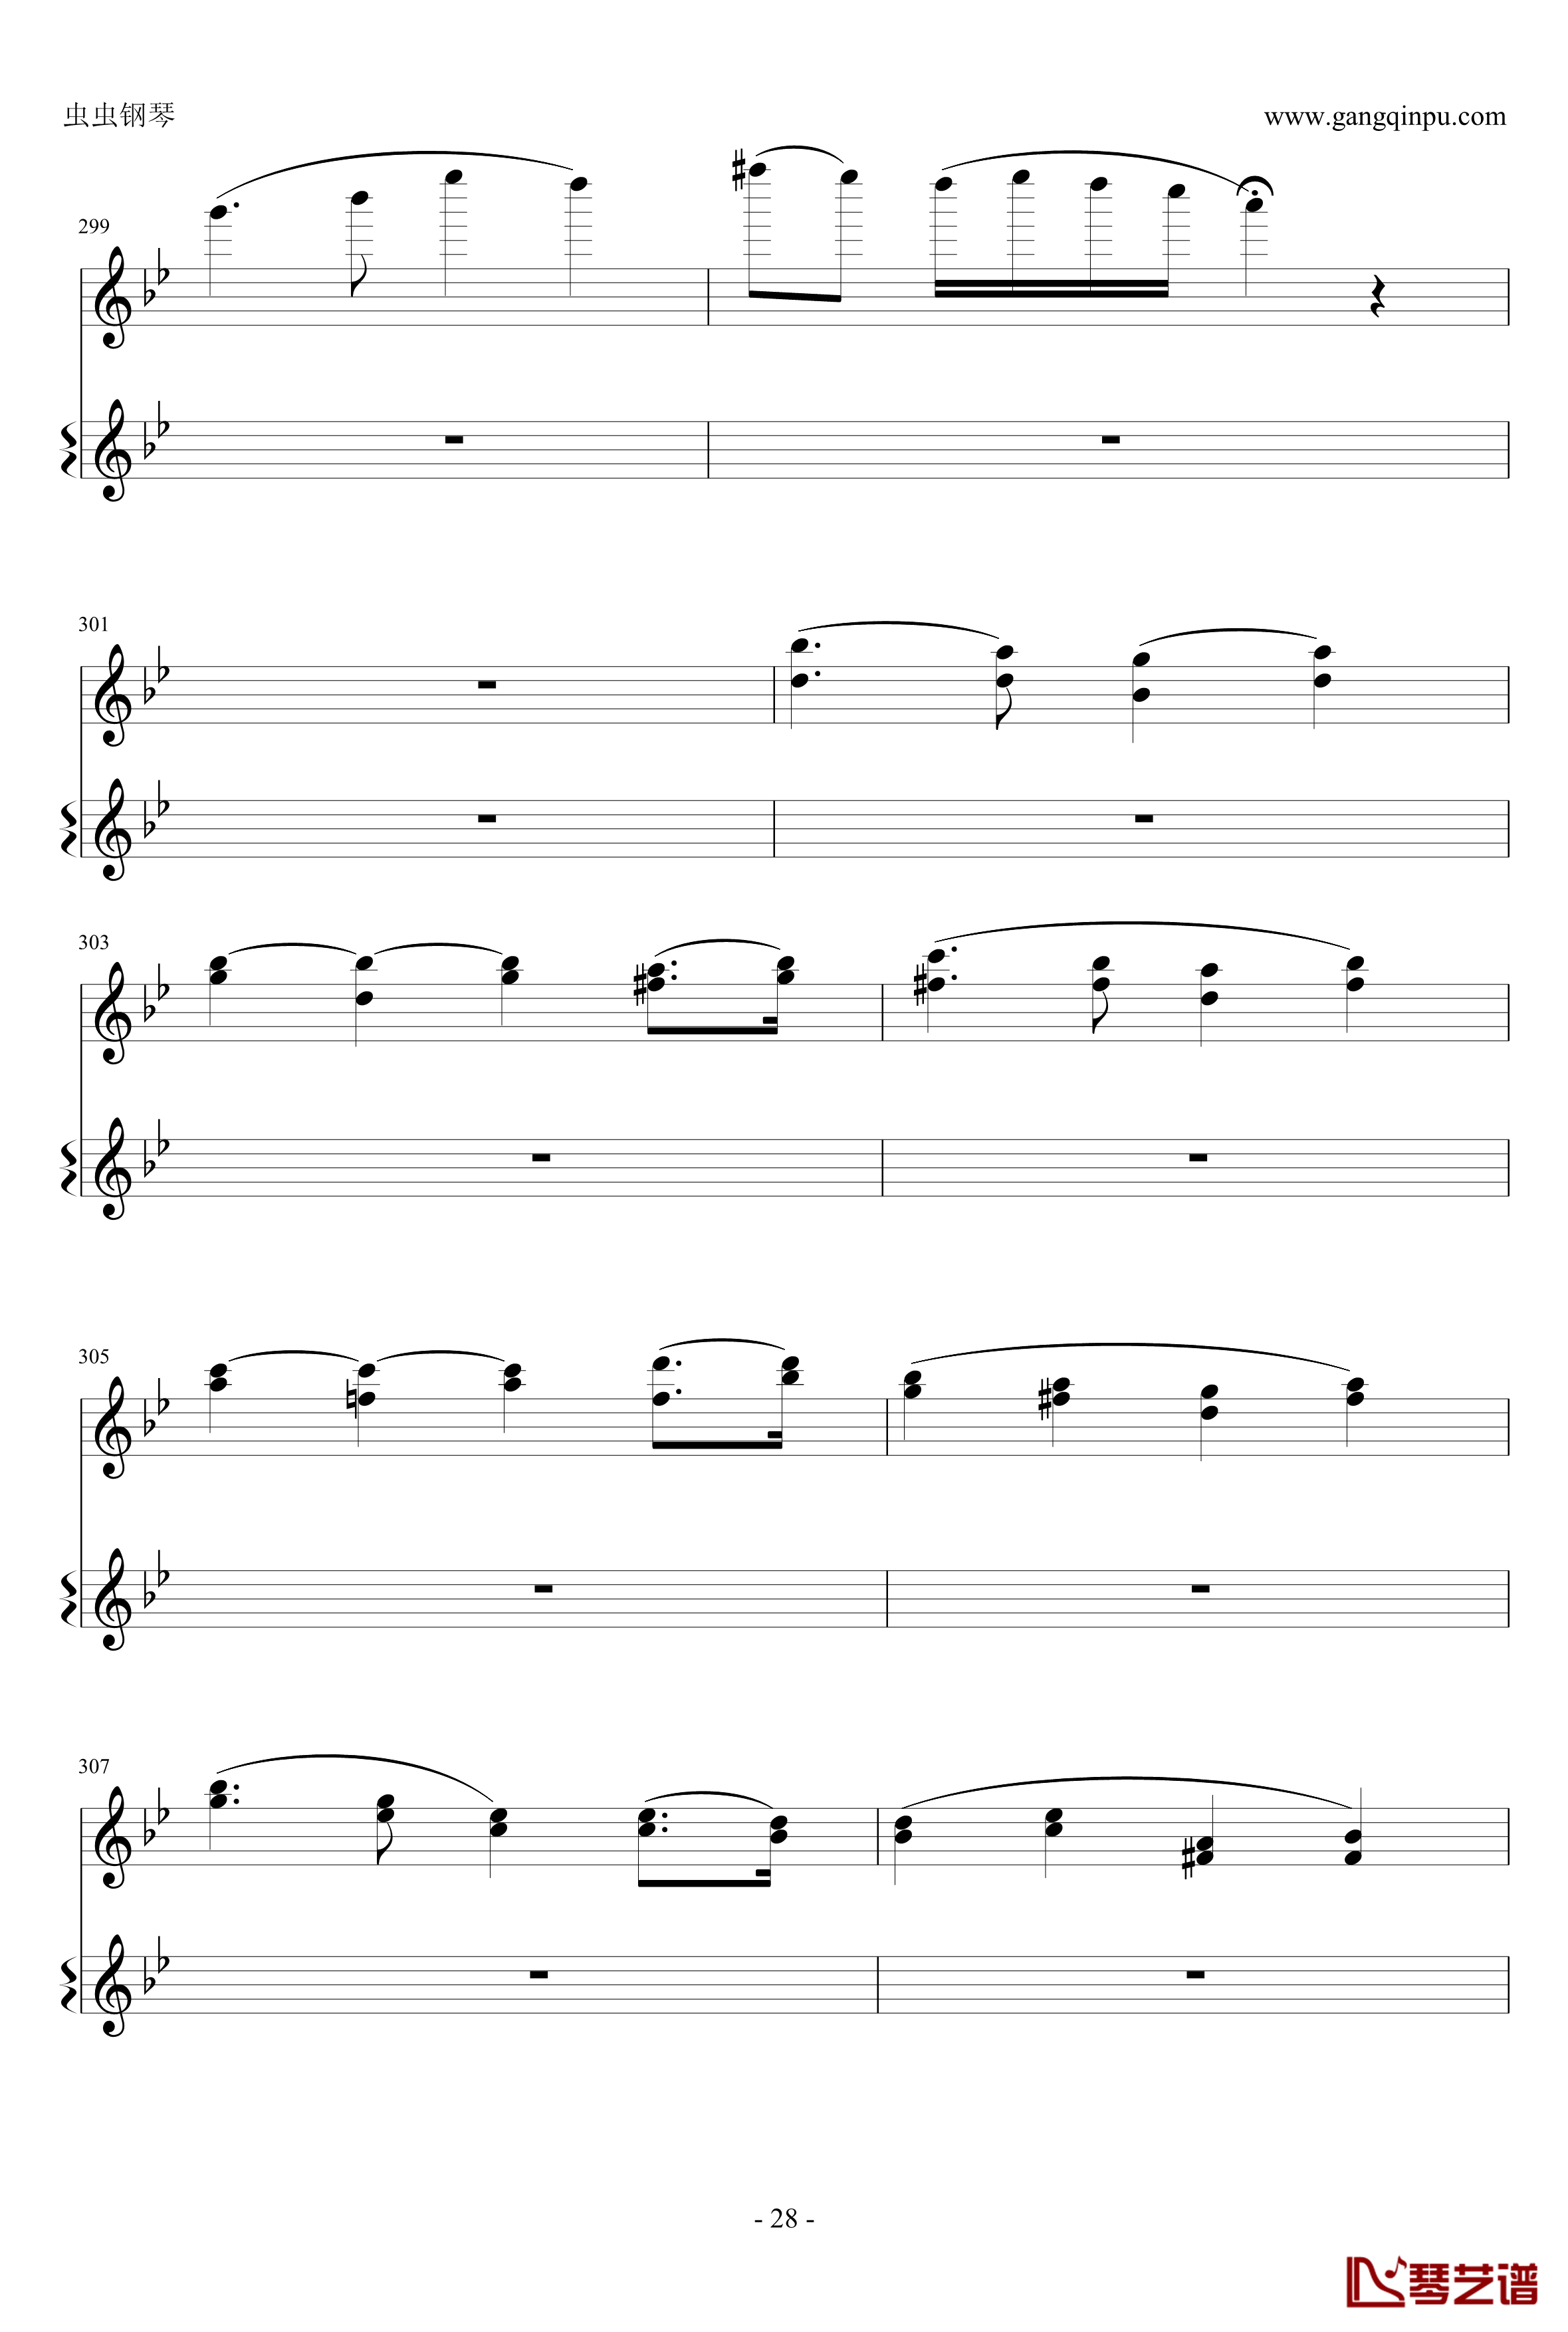 意大利国歌钢琴谱-变奏曲修改版-DXF28